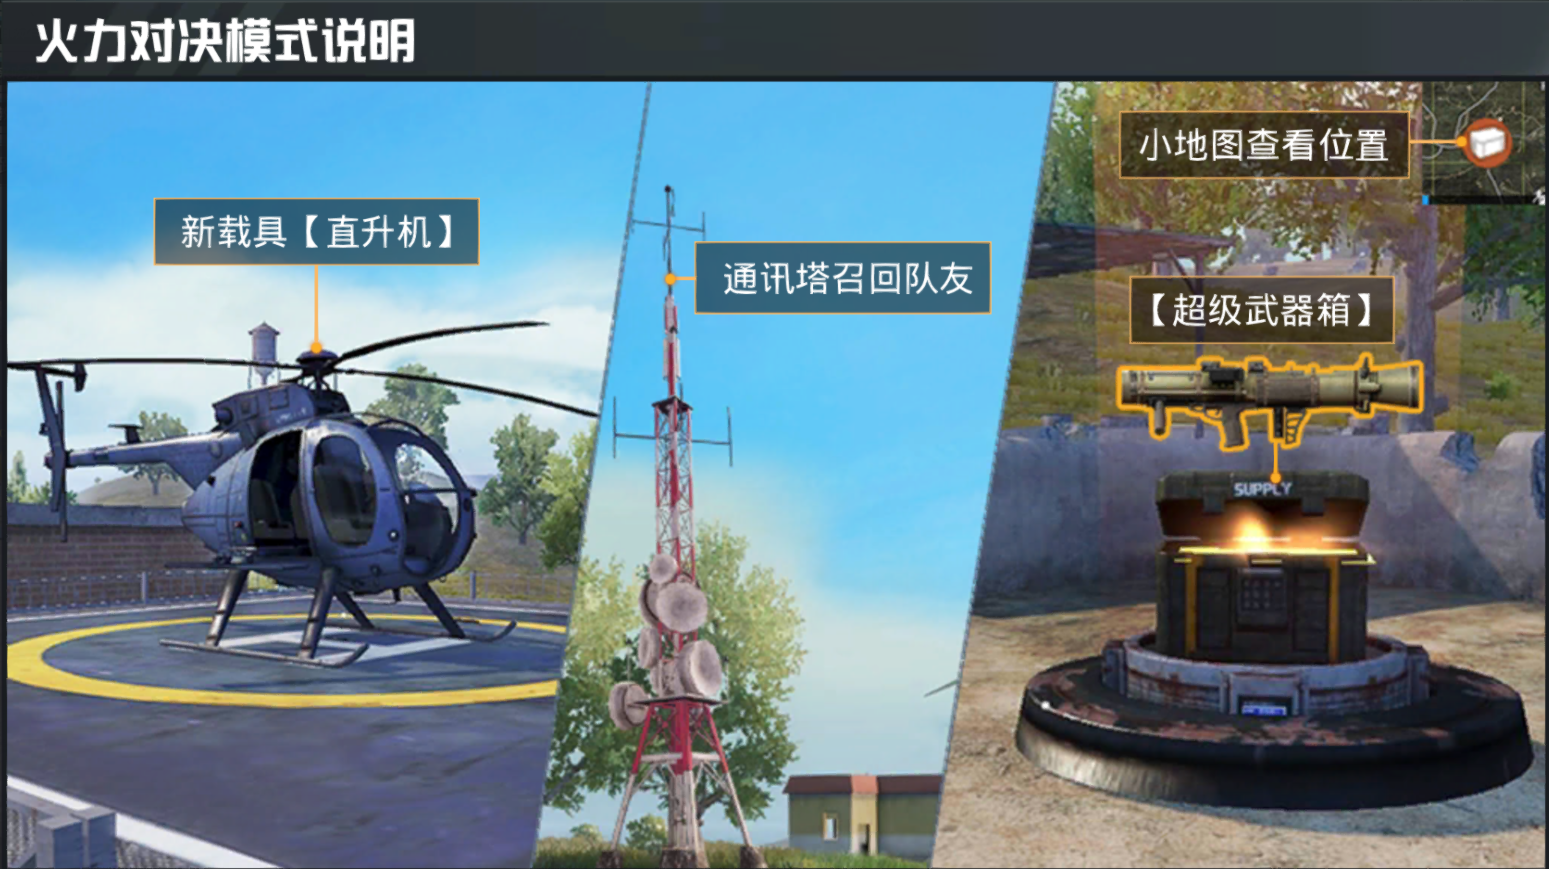 话题:吃鸡火力对决模式上线,第一批被直升机淘汰的玩家出现了